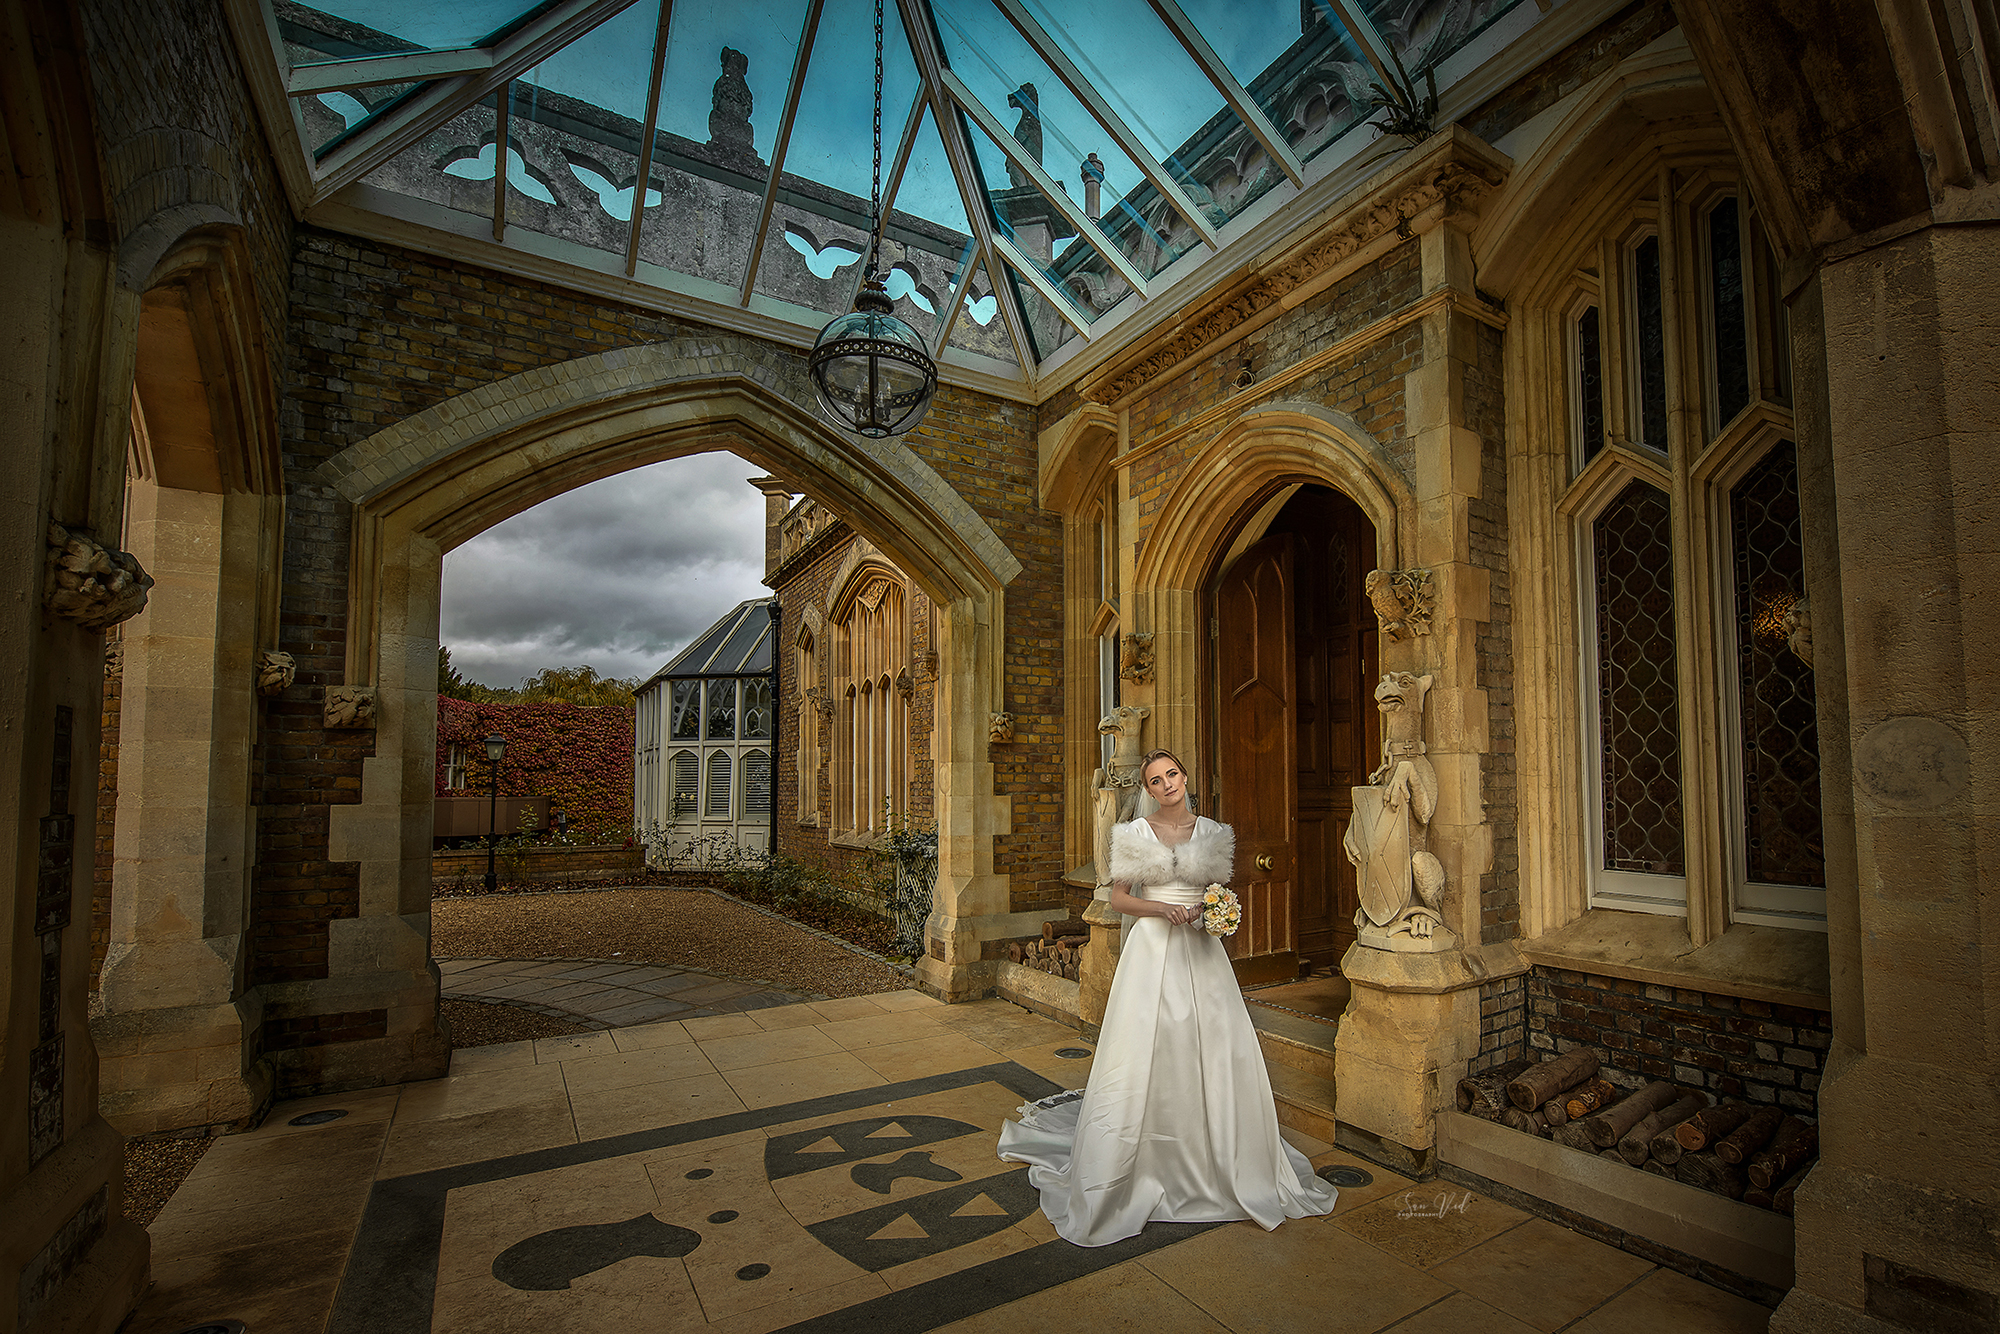 Creative Wedding Bride Photography Windsor UK